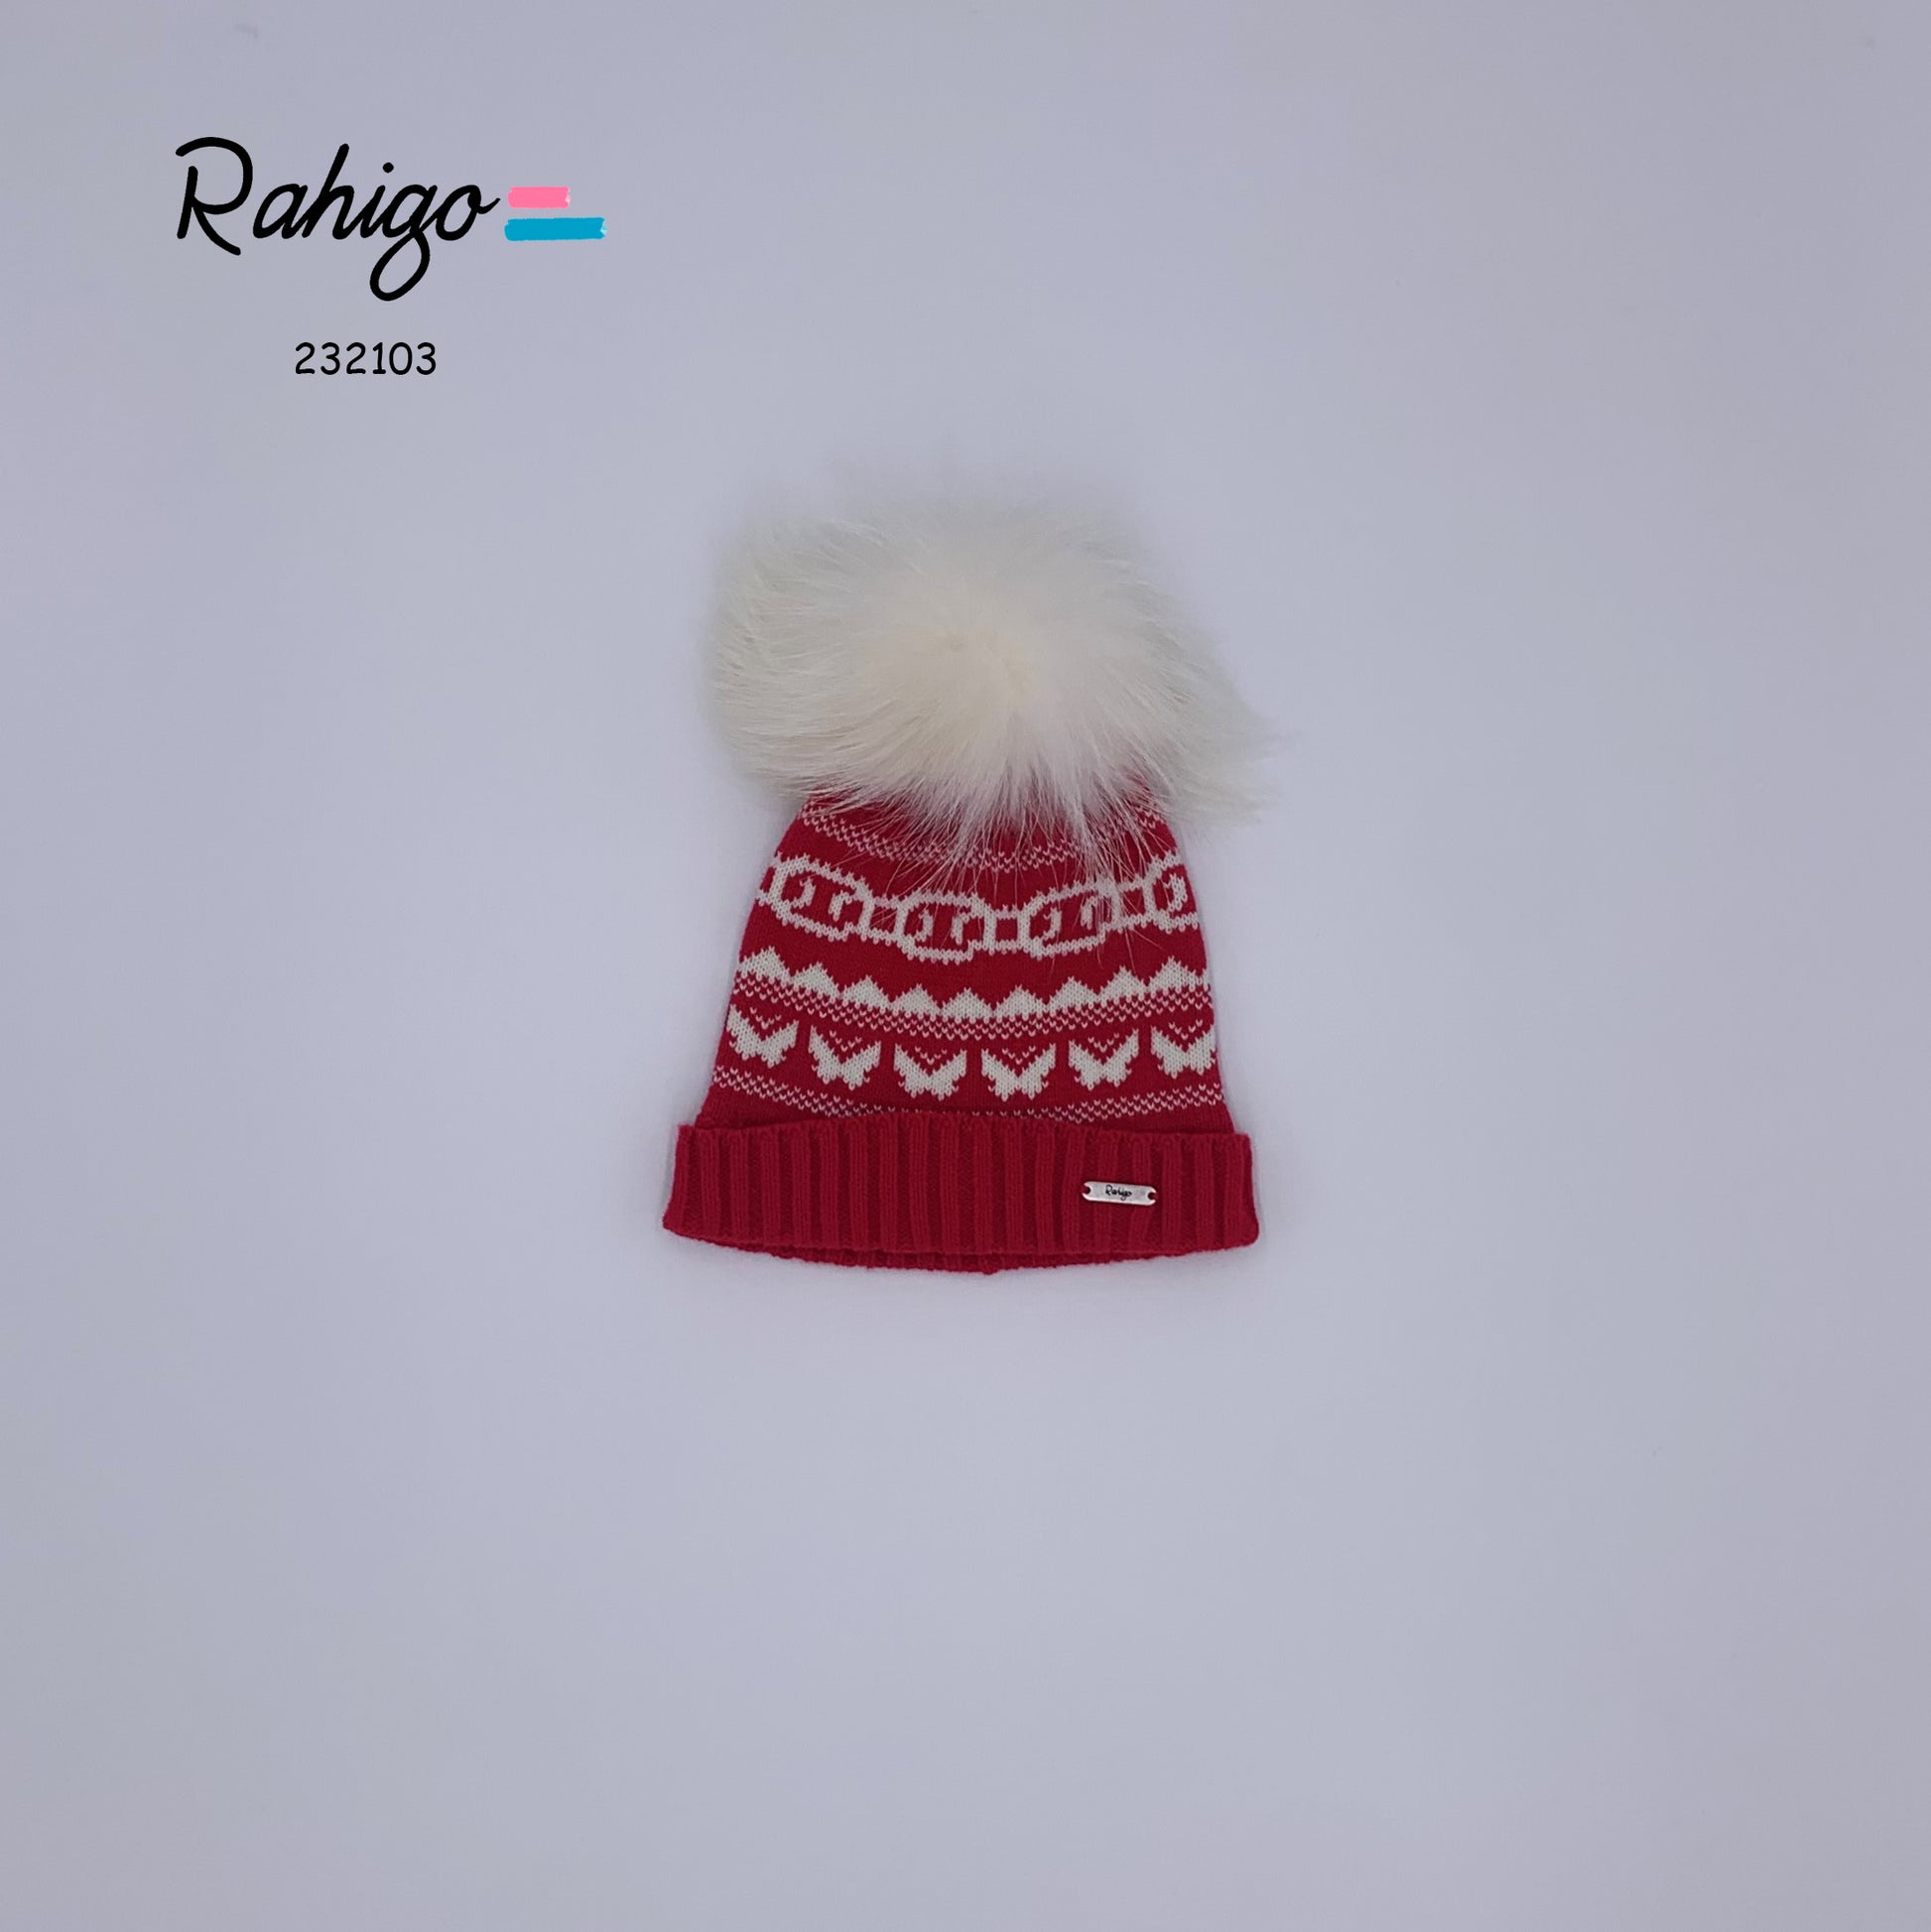 RAHIGO Red & Cream Pom Pom Hat - 232103